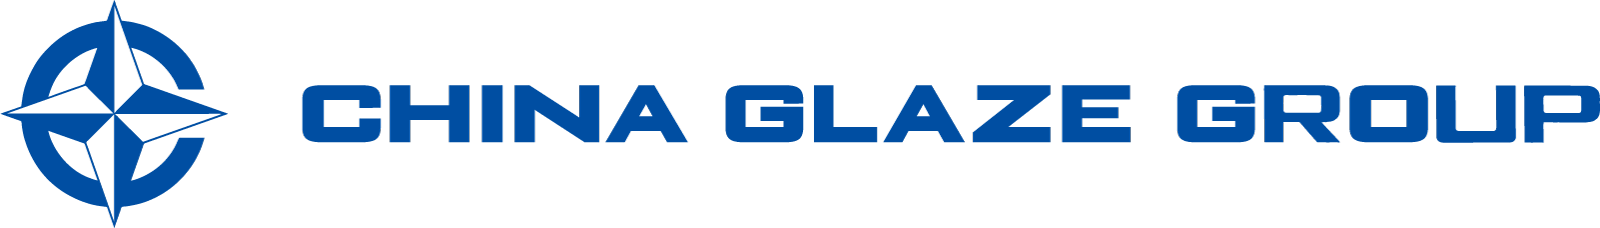 技術開発ページ、台湾本社のChina Glaze Co., Ltd.（和名：チャイナグレーズ株式会社）ははガラス粉末やセラミックスピグメントの製造カンパニーです。各種の導電ペースト用ガラス粉末、自動車LEDライト用顔料、プロジェクター用顔料、建材デジタルプリントカラー顔料を製造してます。